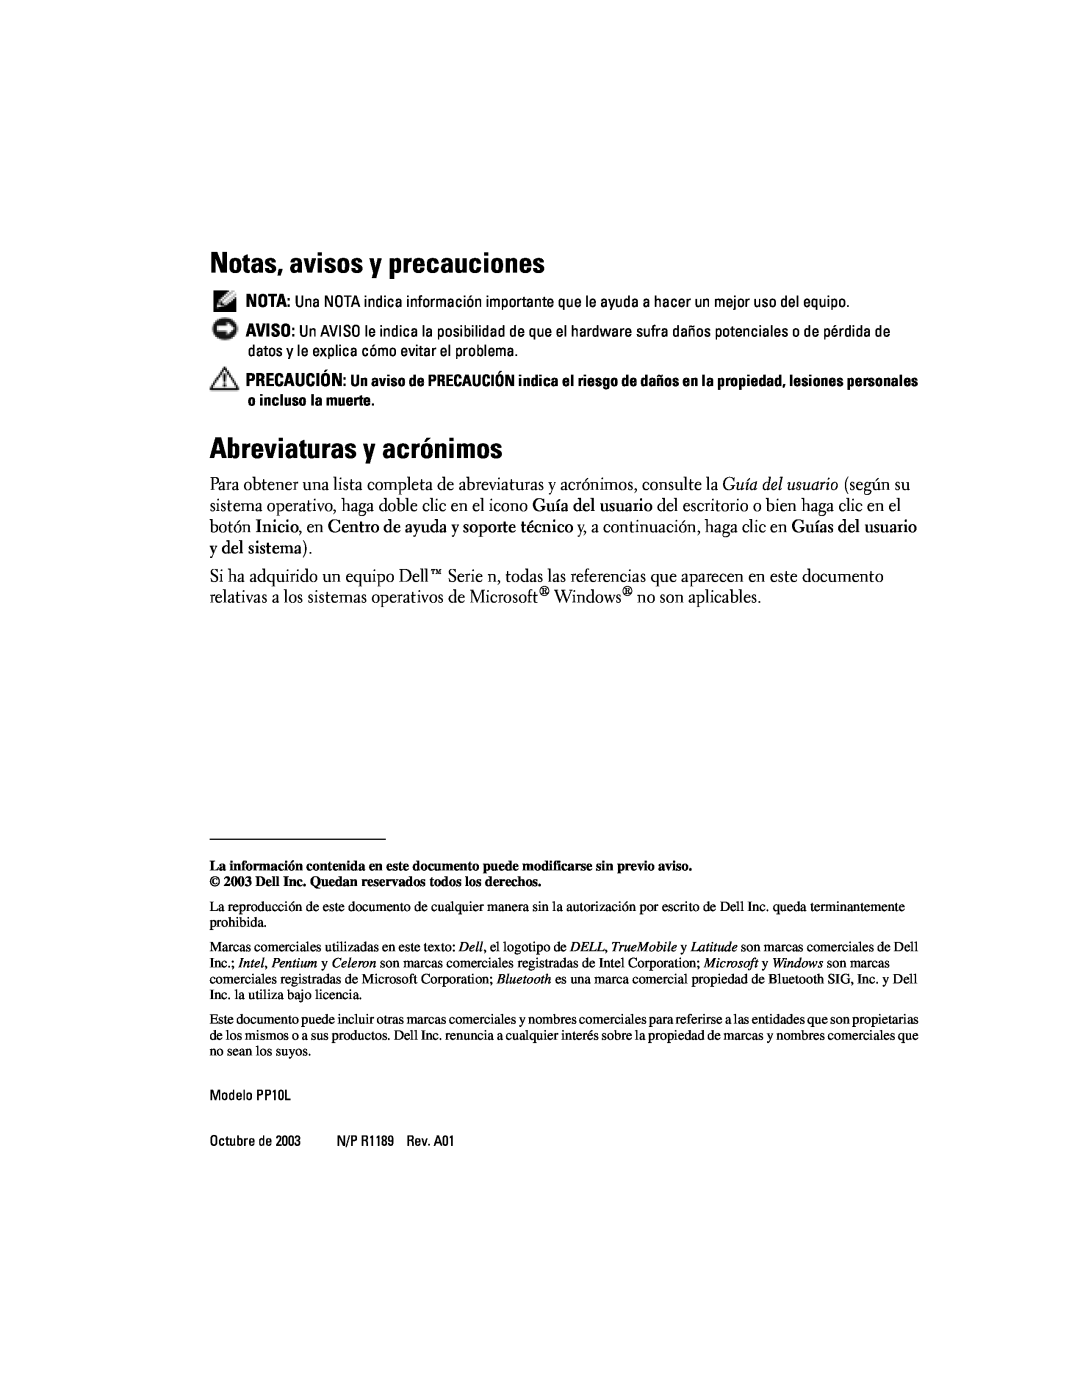 Dell D505 manual Notas, avisos y precauciones, Abreviaturas y acrónimos 